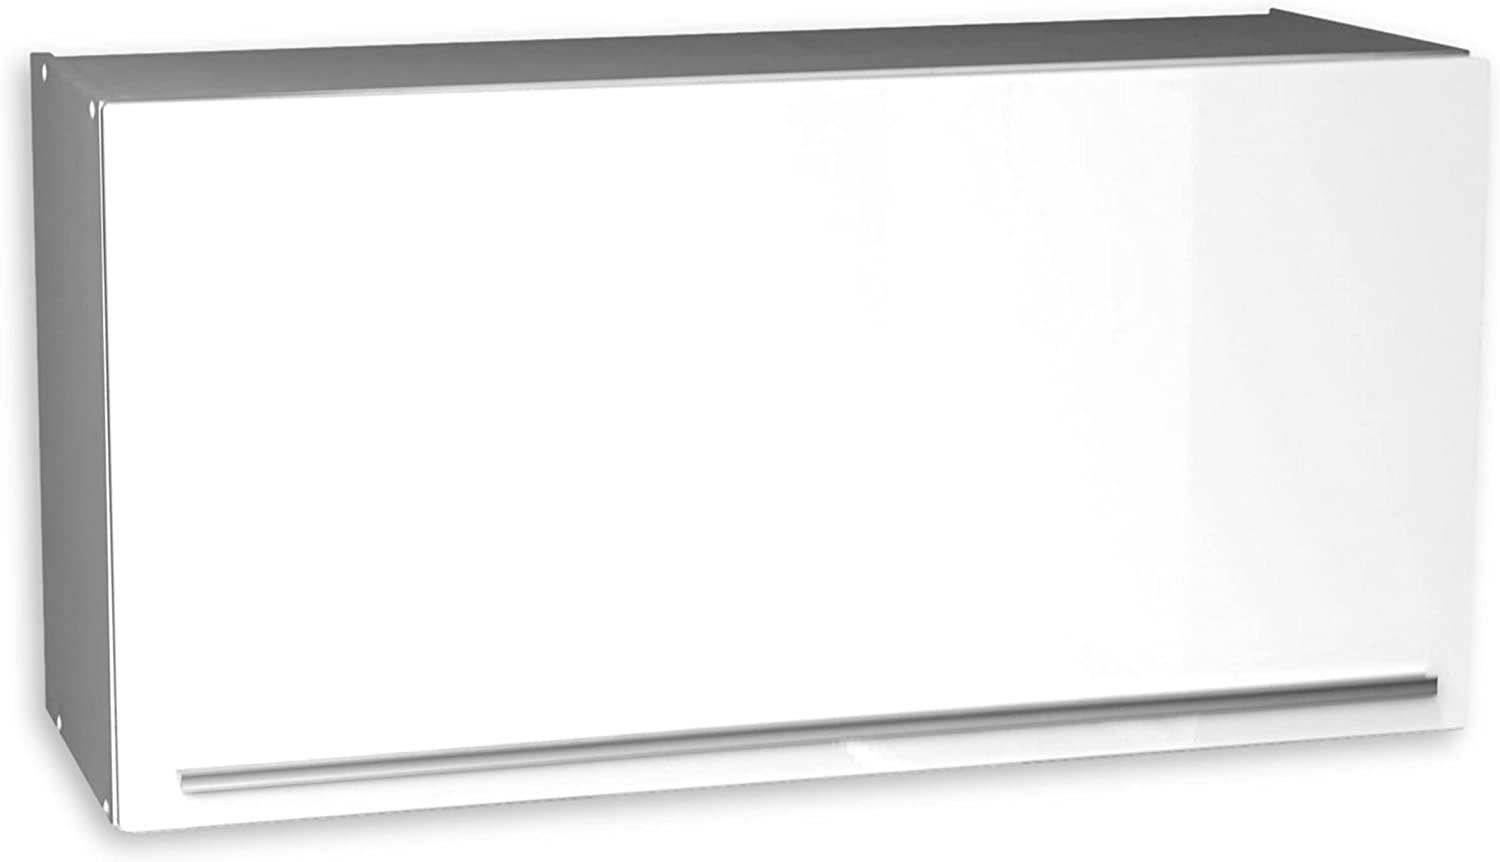 JAZZ Moderner Hängeschrank Küche mit Klapptür in Weiß - Geräumiger Küchenschrank mit viel Stauraum - 100 x 50 x 34,6 cm (B/H/T) Bild 1